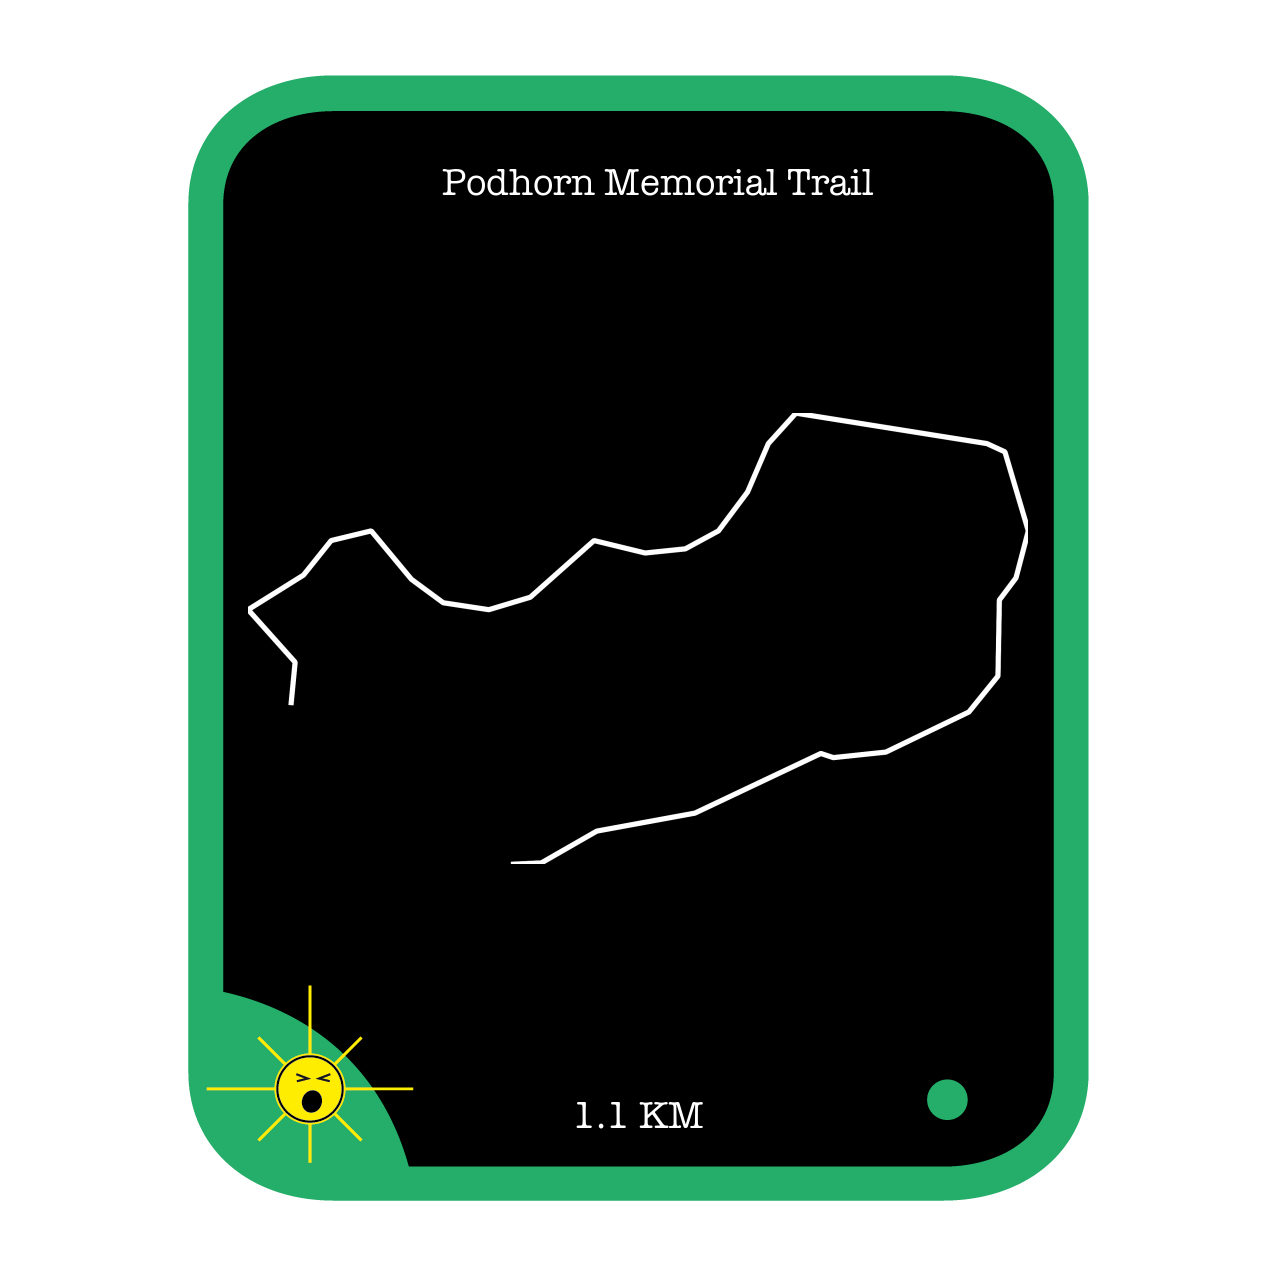 Podhorn Memorial Trail